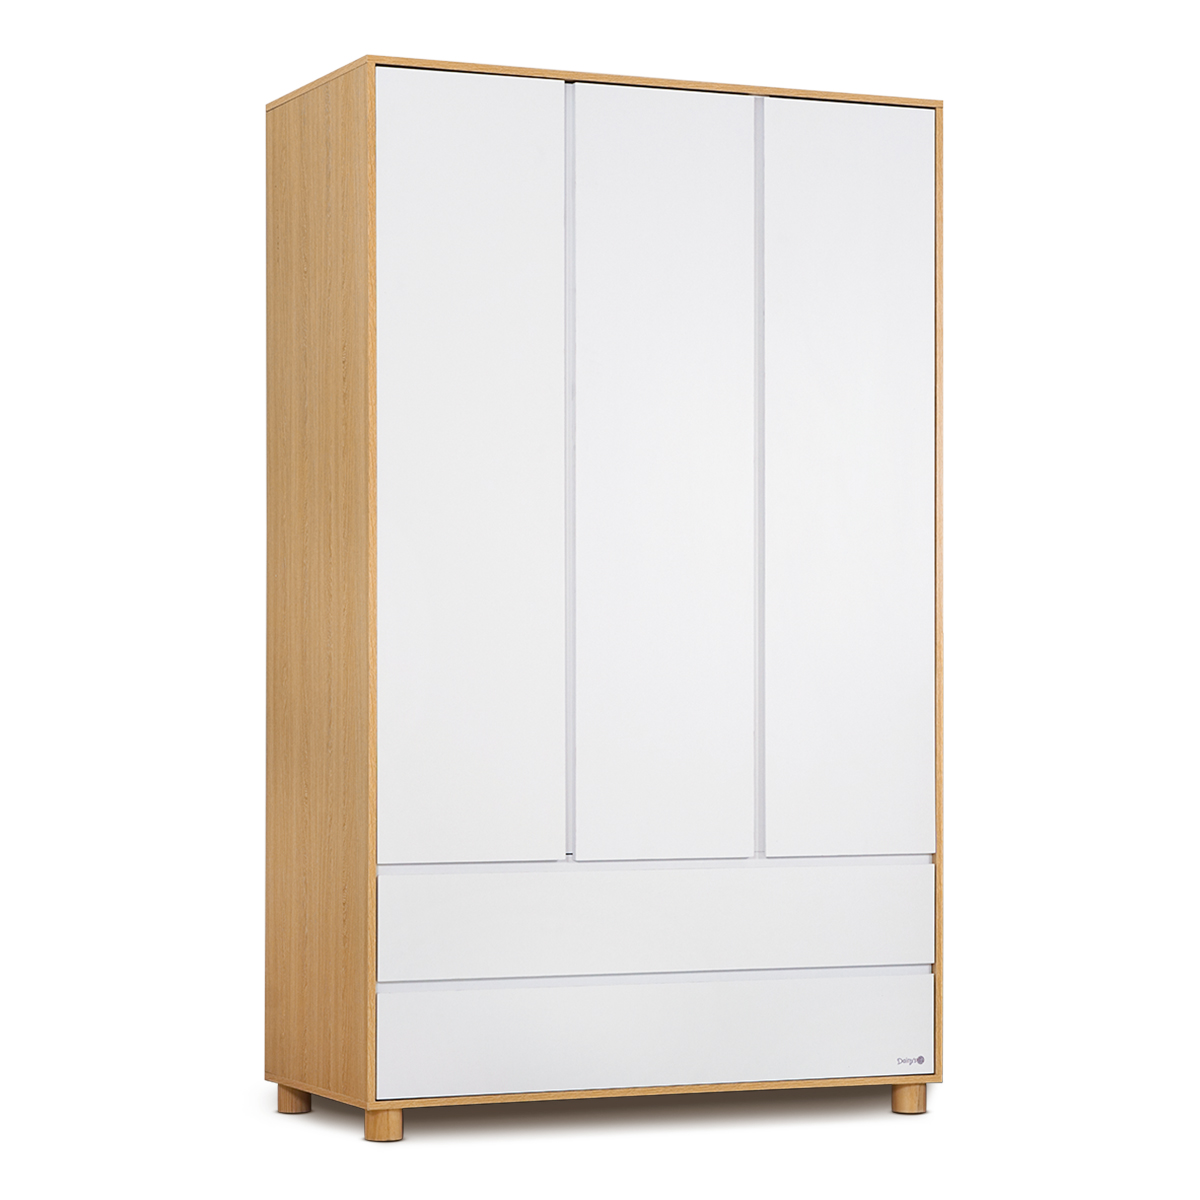 ארון בגדים דייניז בריידי לבן/עץ – Dainy’s Brady™ Wardrobe White/Wood 120x60x200 cm